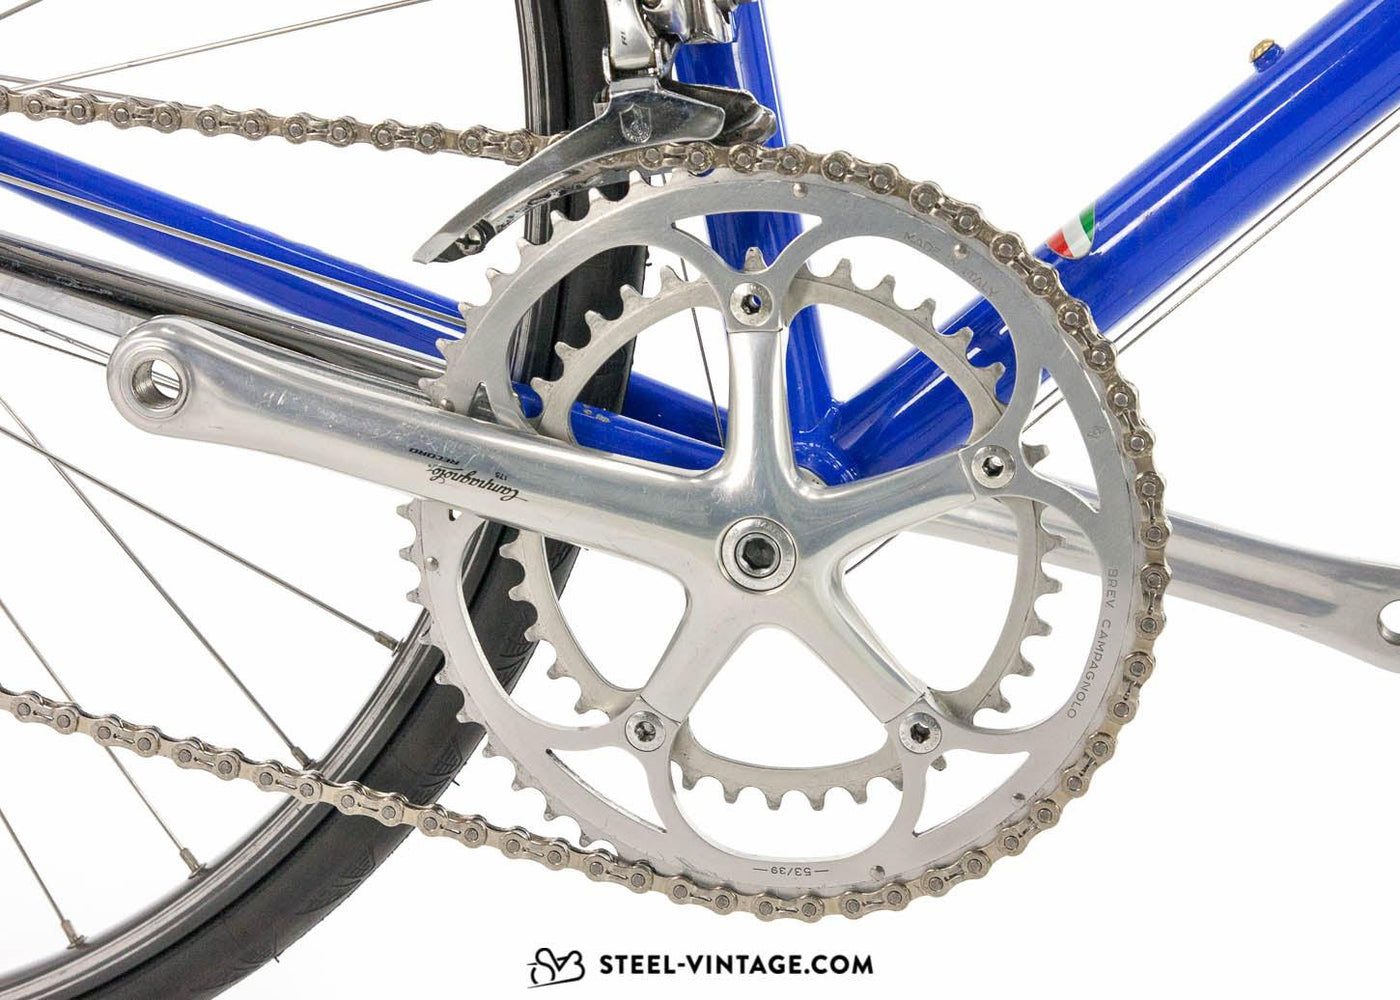 Gios Team Kelme Compact 1995 Vintage Bicycle - Steel Vintage Bikes